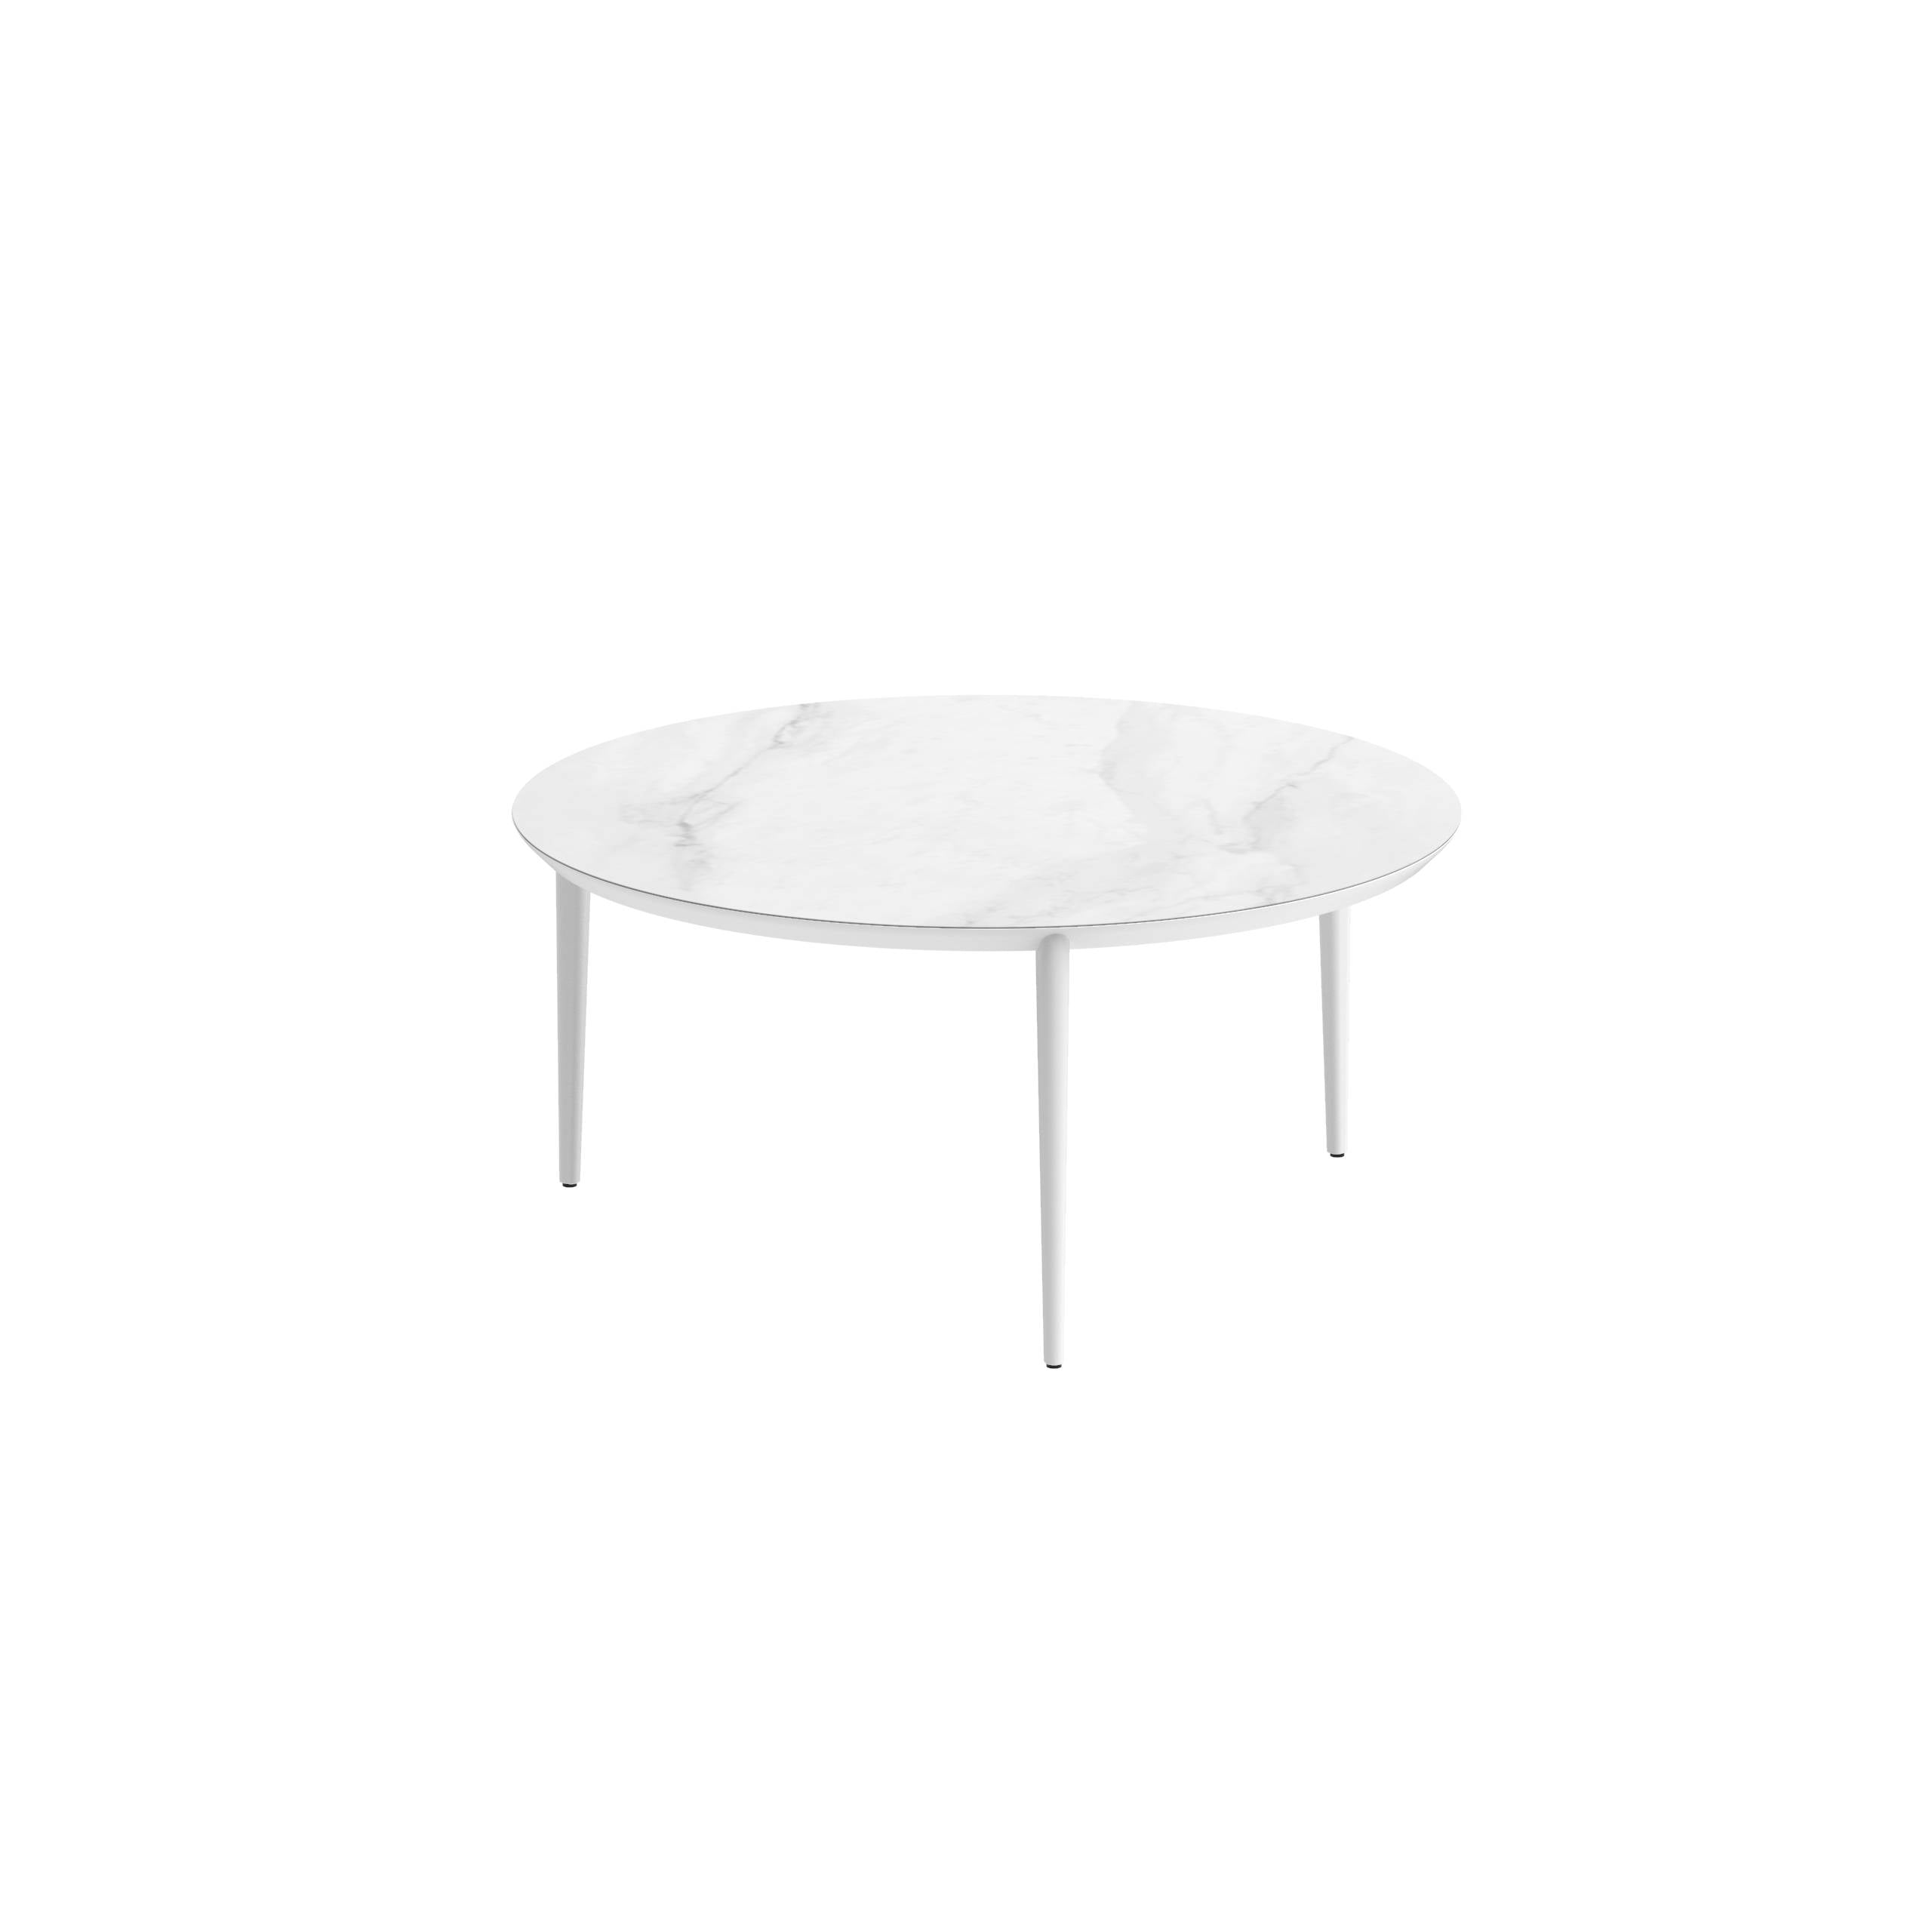 U-Nite Table Round Ø 160cm Alu Legs White - Table Top Ceramic Bianco Statuario